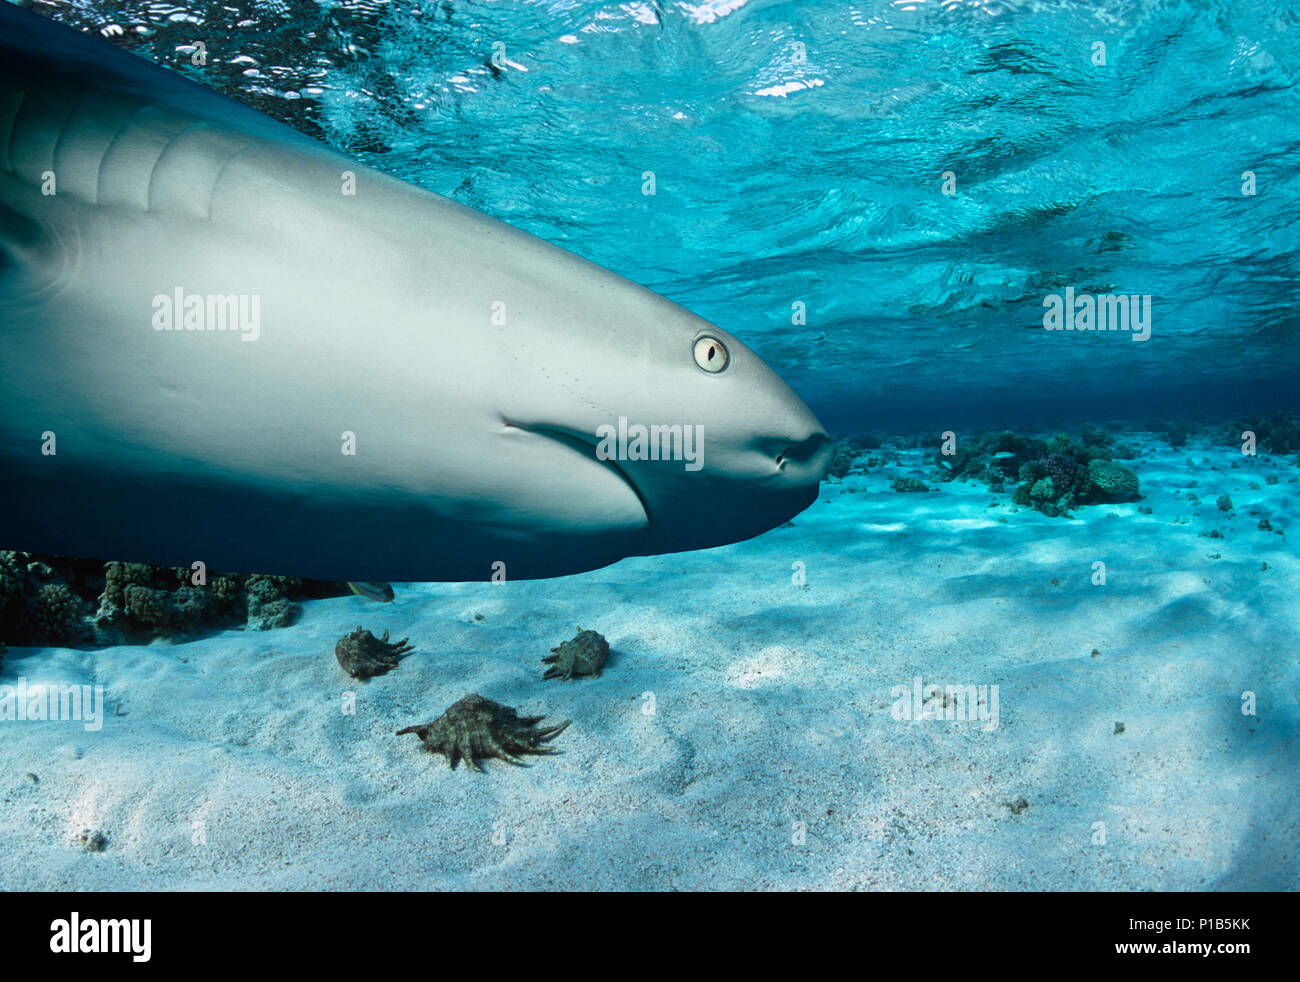 Karibische Riffhai (Carcharhinus perezi) Jagd Yellowtail Snapper (Ocyurus chrysurus), Bahamas - Karibik. Bild digital geändert zu entfernen. Stockfoto